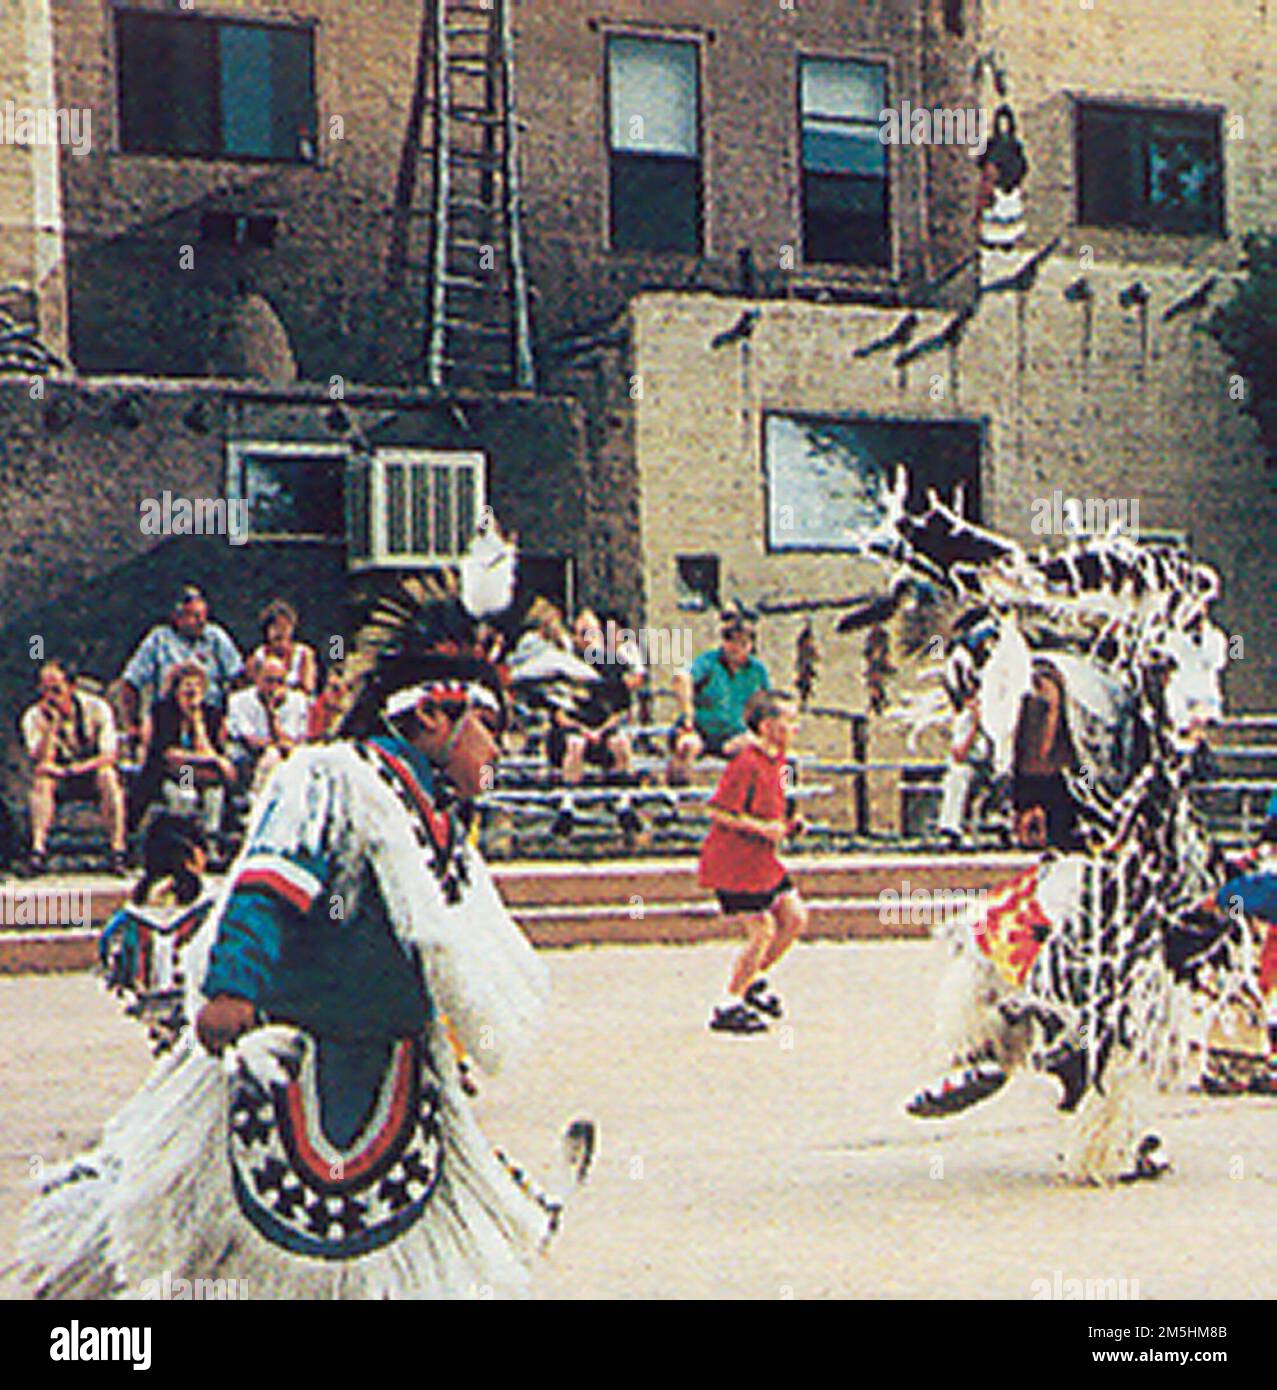 Sentier des anciens - Centre culturel Cortez. Les Indiens d'Amérique dansent au rythme d'un gros tambour au Centre culturel Cortez. Les soirées d'été, le centre accueille d'excellents programmes gratuits tels que des danses d'Utes, Navajos et d'autres Indiens américains et des programmes culturels qui se concentrent sur des sujets tels que la tradition de la peinture de sable Navajo ou le Code Navajo parlant pendant la Seconde Guerre mondiale. Emplacement : Cortez, Utah (37,351° N 108,585° O) Banque D'Images